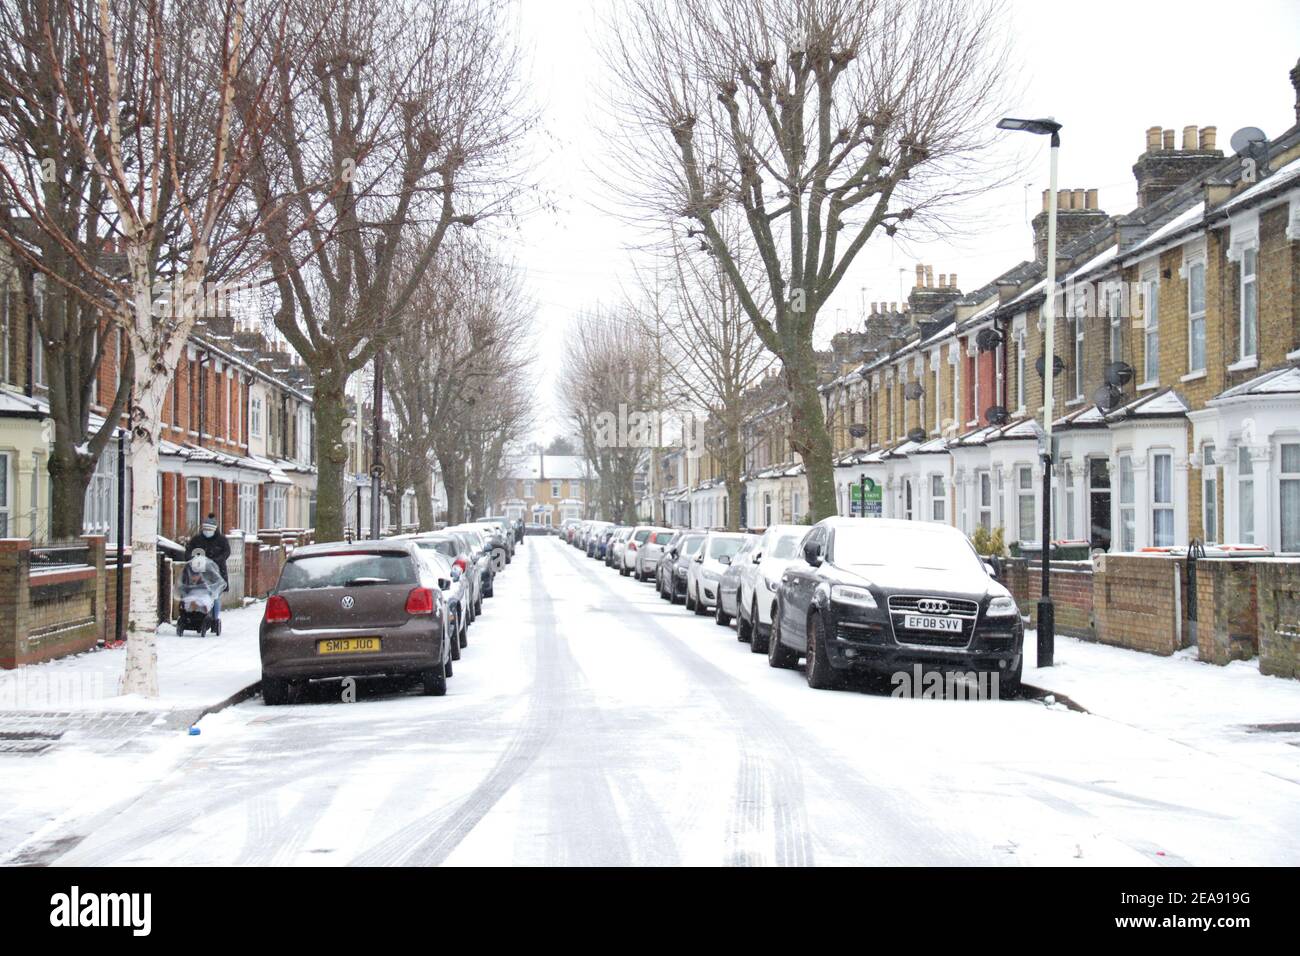 Blick auf eine verschneite Straße in East London nach einem starken Schneefall durch Sturm Darcy. Schwerer Schnee und Eis haben Teile des Vereinigten Königreichs gestört, und London erhielt etwa 5cm Schnee. Die starken Ostwinde des Sturms Darcy haben die Temperaturen in Teilen Großbritanniens auf unter minus eins gesunken. Stockfoto